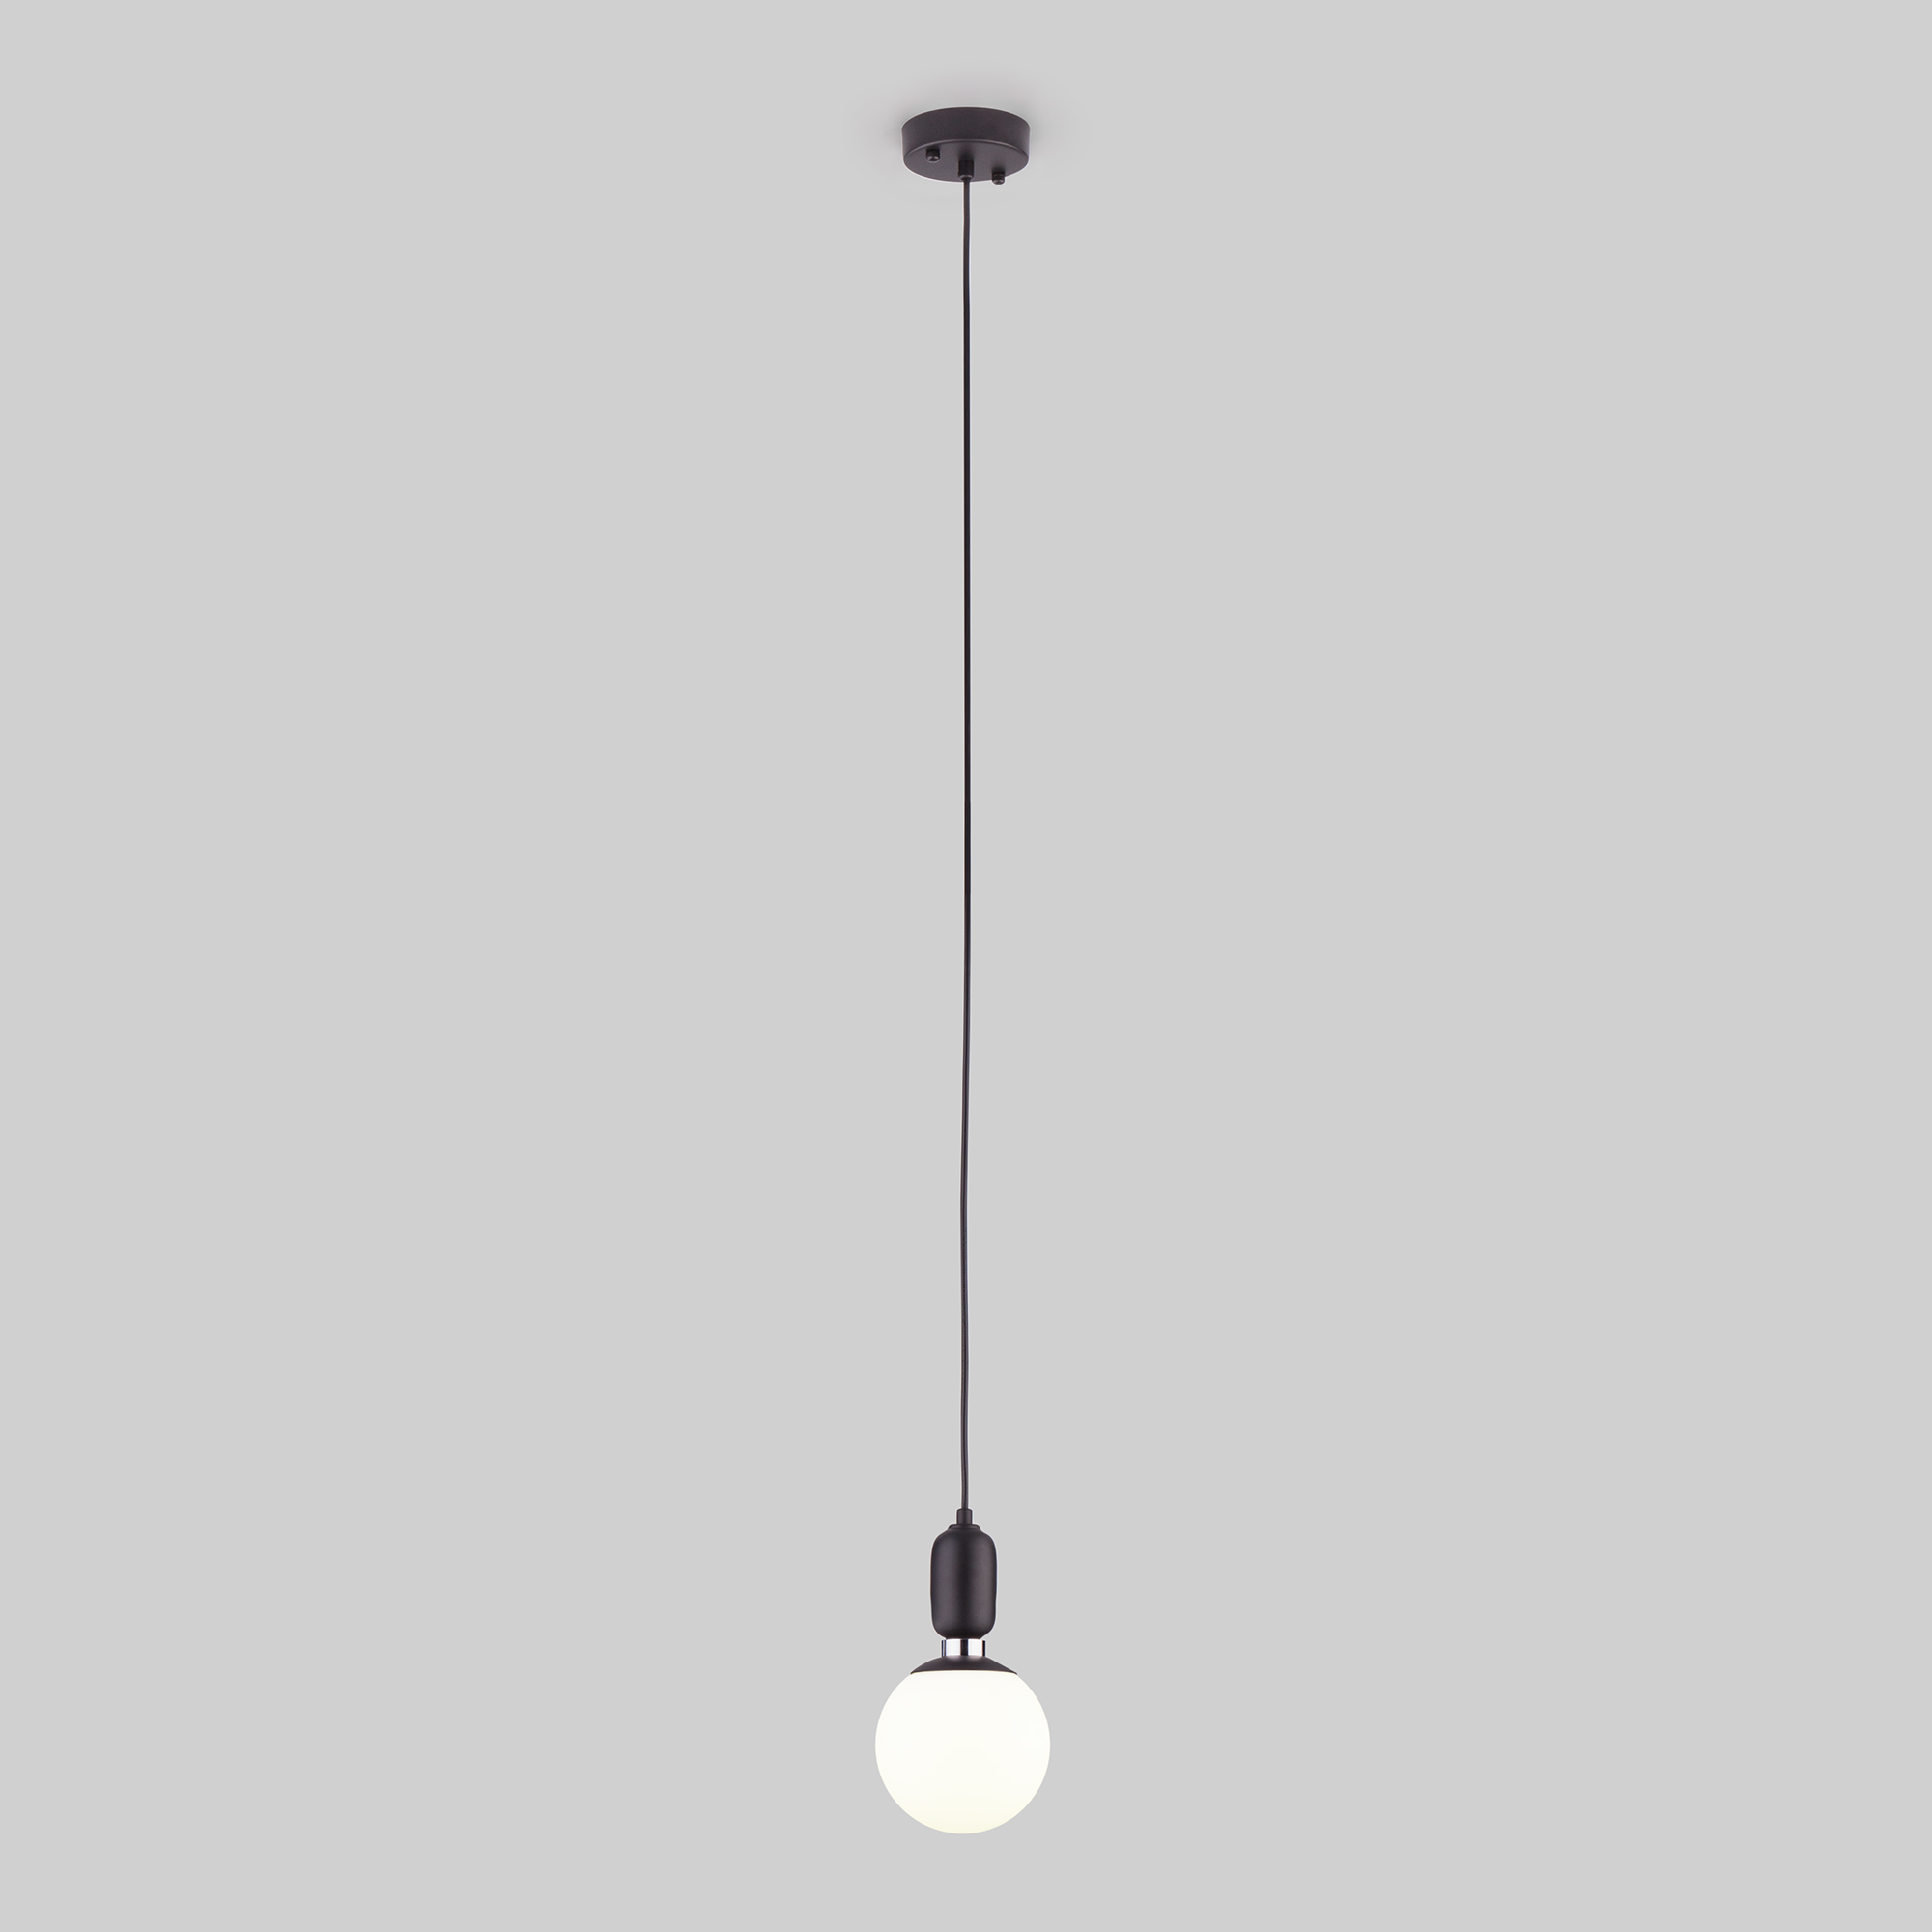 Подвесной светильник с тросом 1,8 м 50158/1 черный